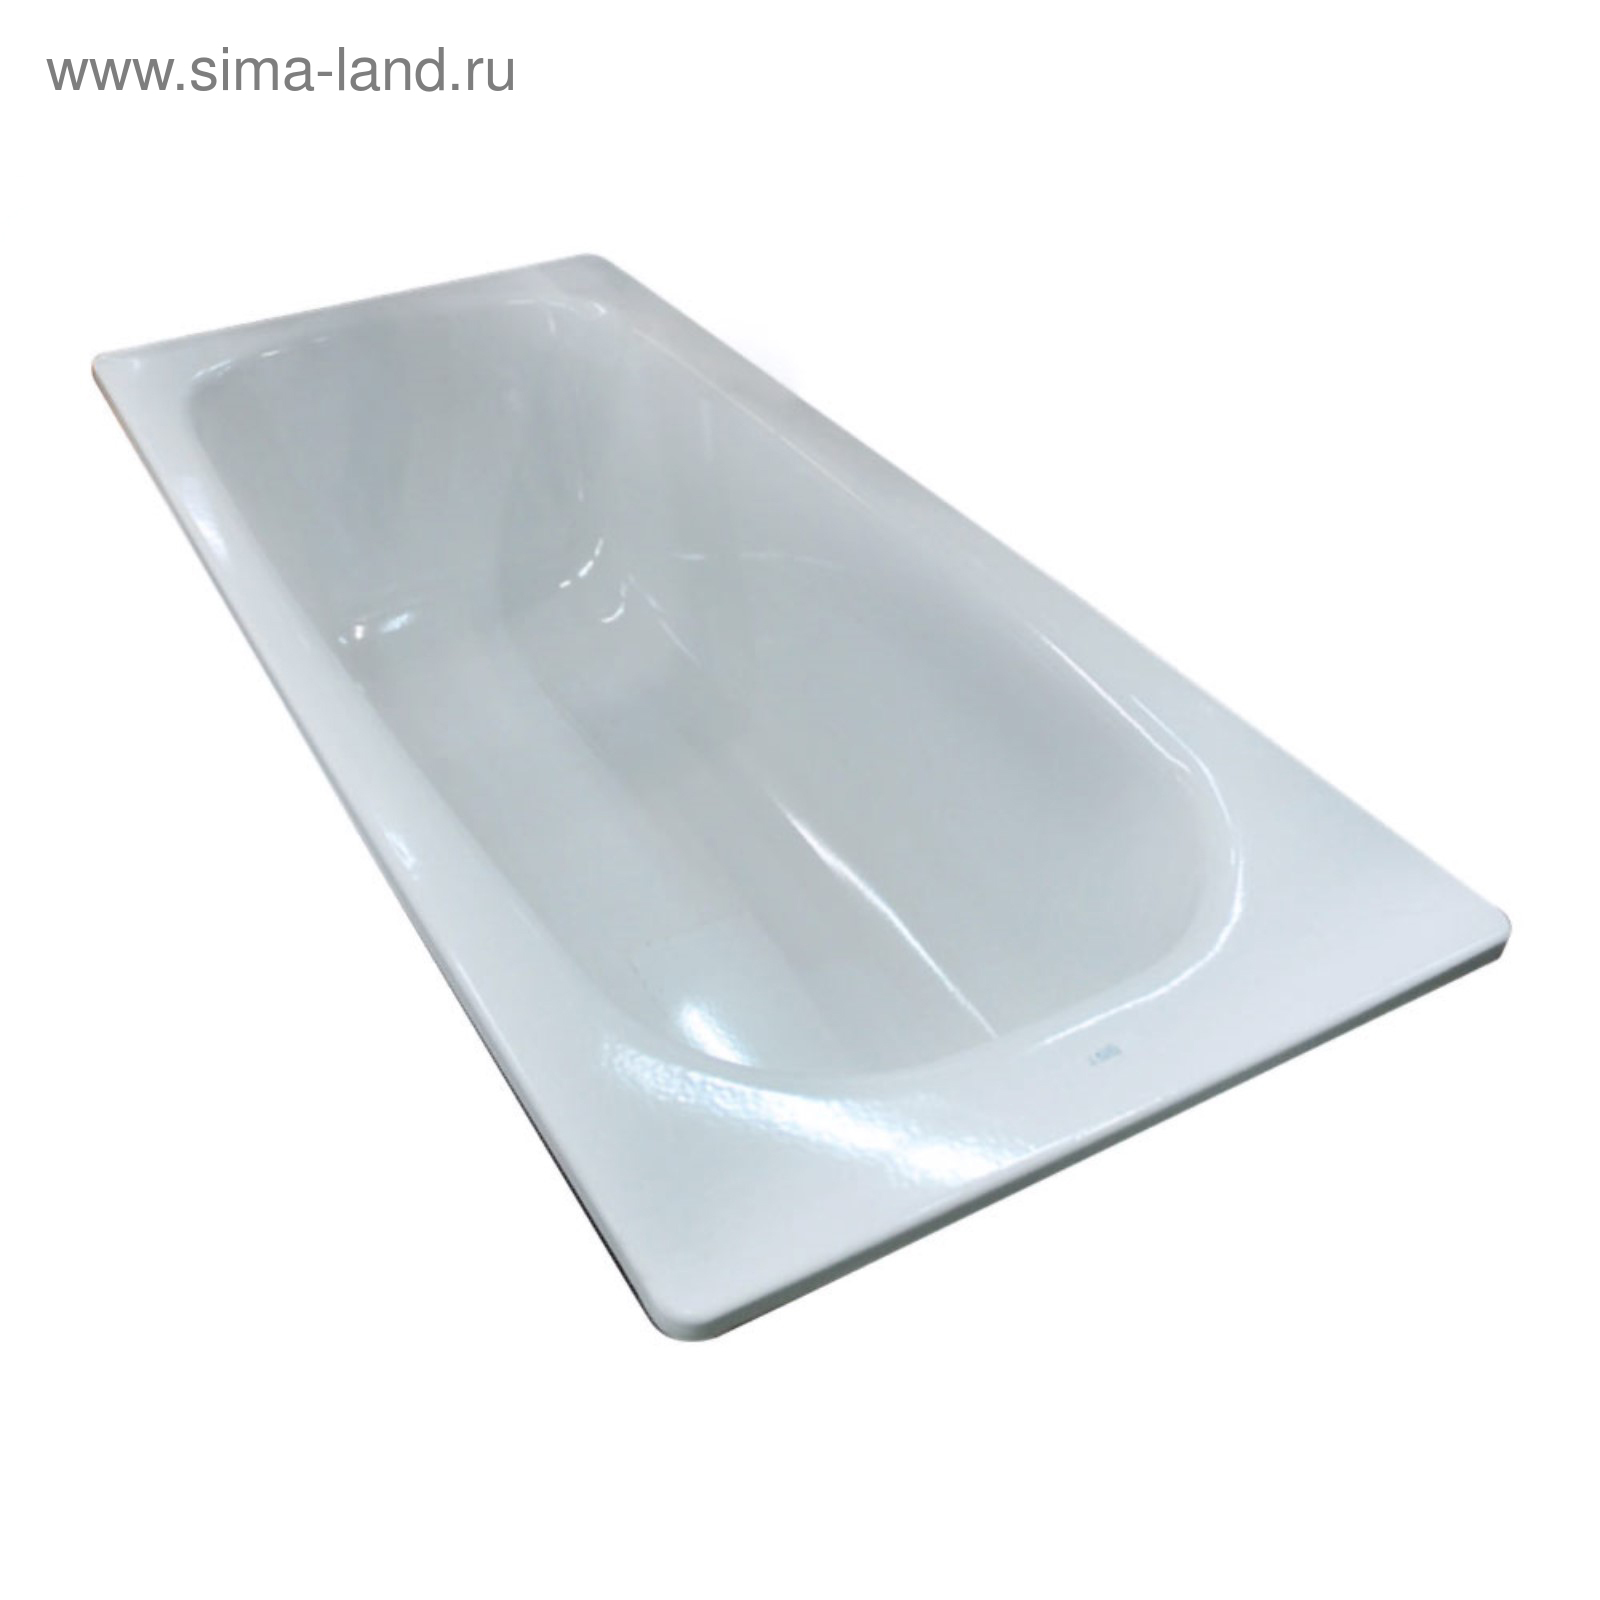 Ванна стальная BLB Universal HG 150 х 70 см, 3,5 мм, без отверстия для  ручек (3868162) - Купить по цене от 30 106.00 руб. | Интернет магазин  SIMA-LAND.RU